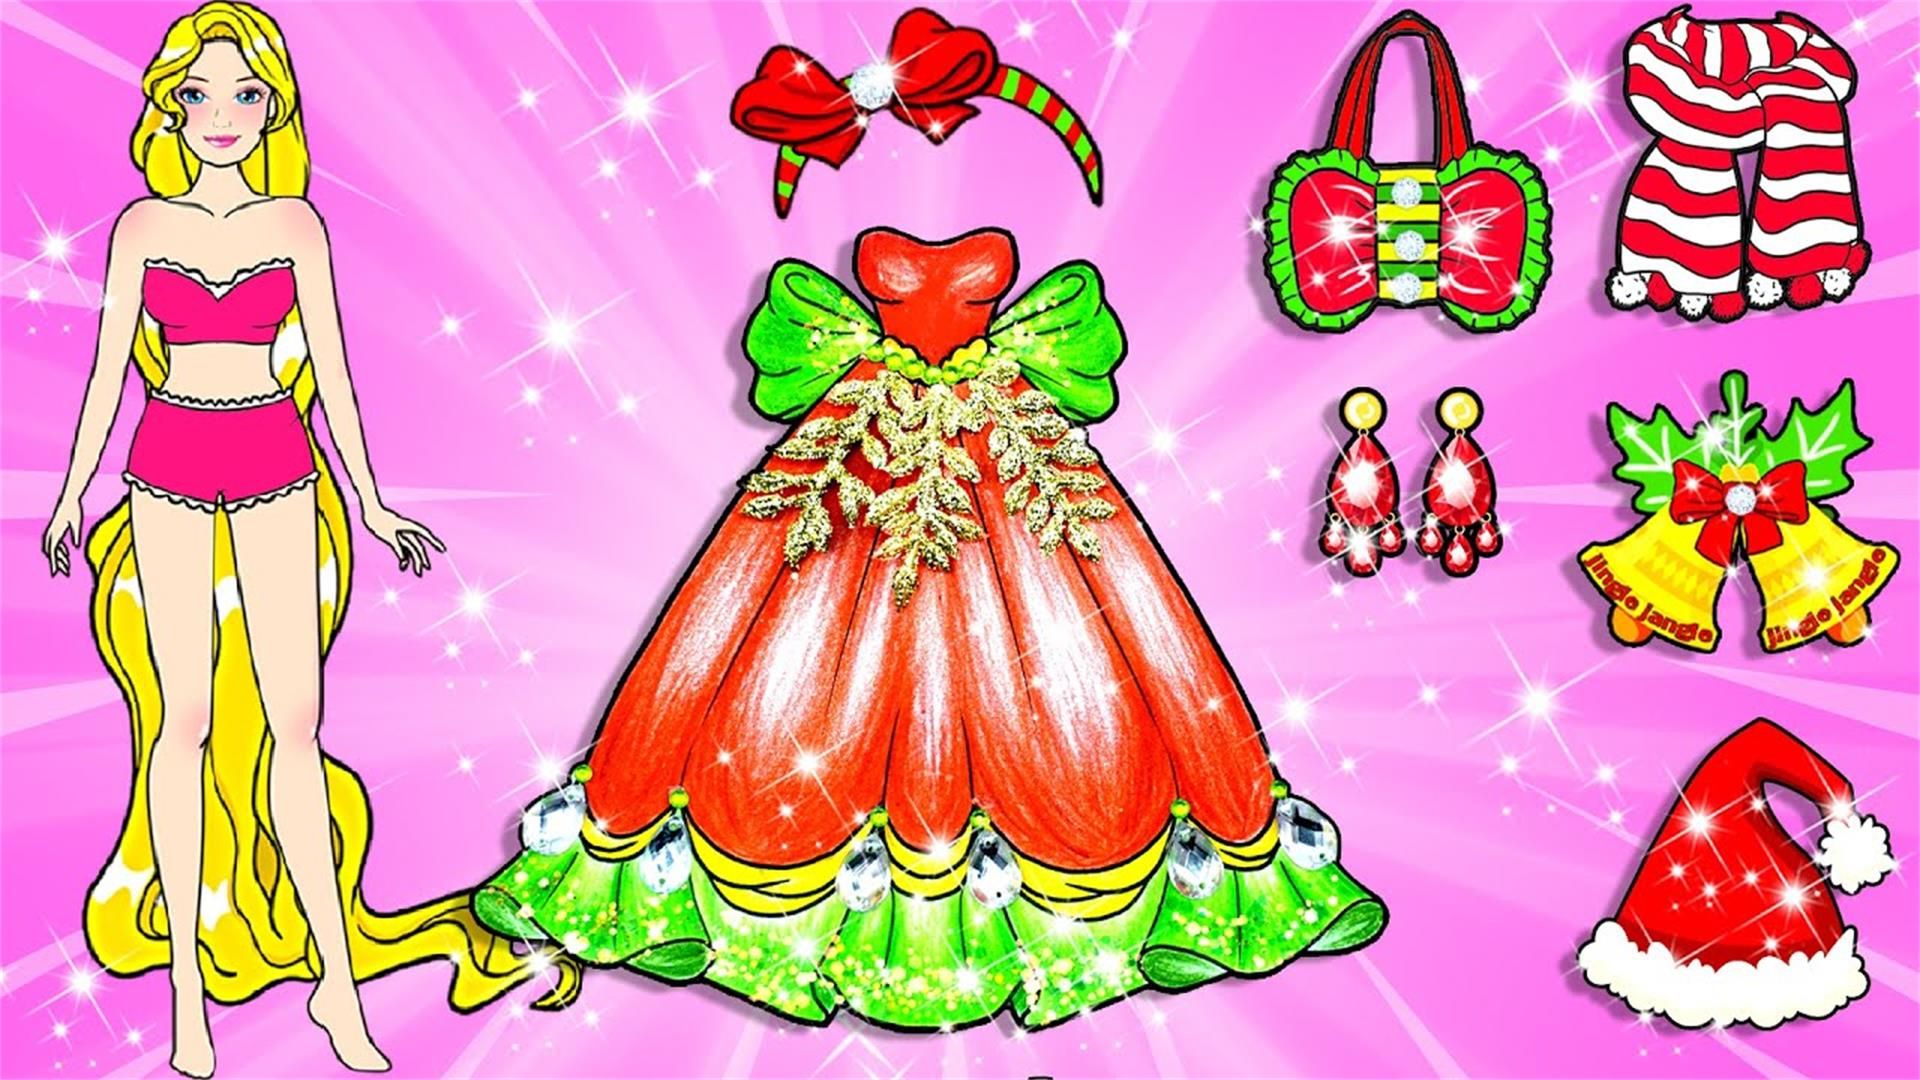 纸娃娃动画:长发圣诞公主变装挑战,红配绿蛋糕泡泡裙,好看吗?